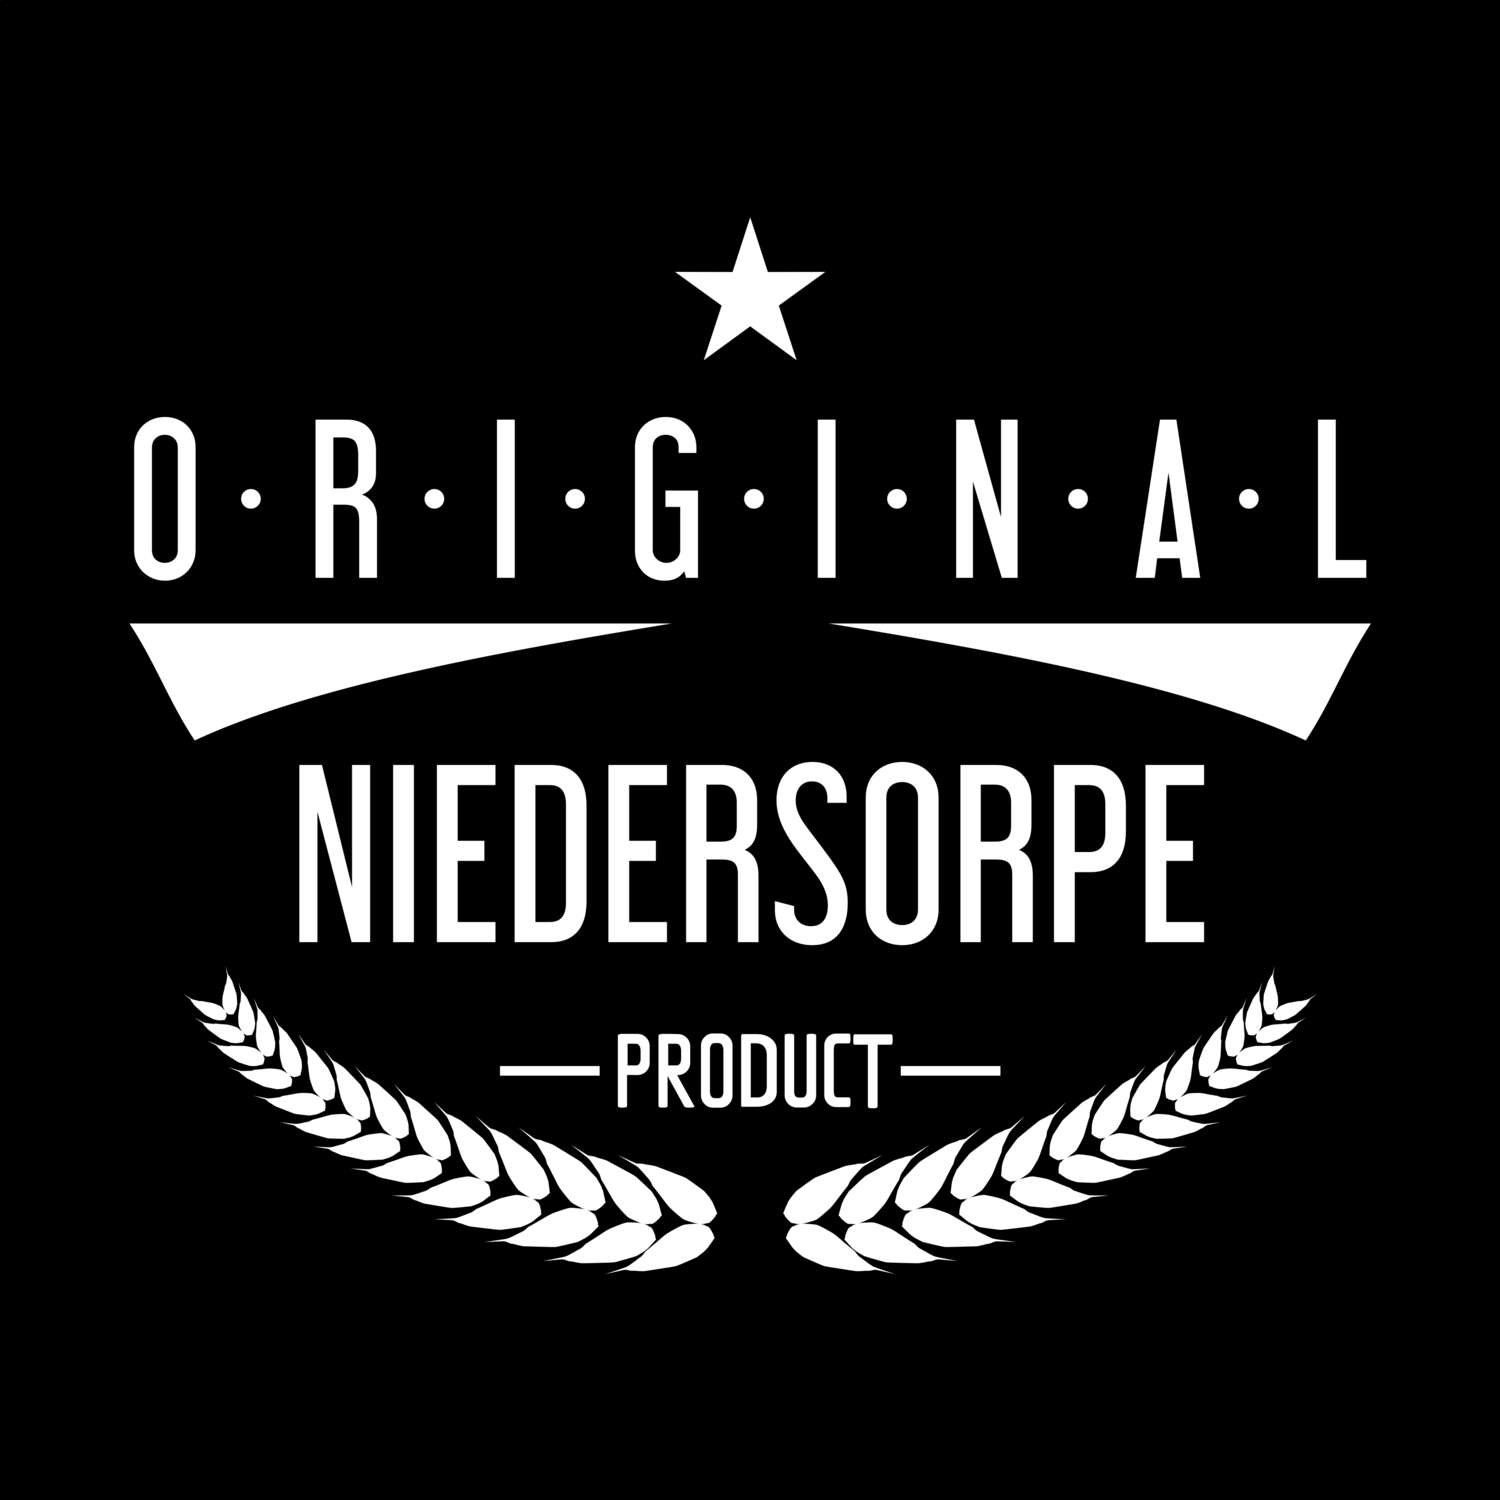 Niedersorpe T-Shirt »Original Product«